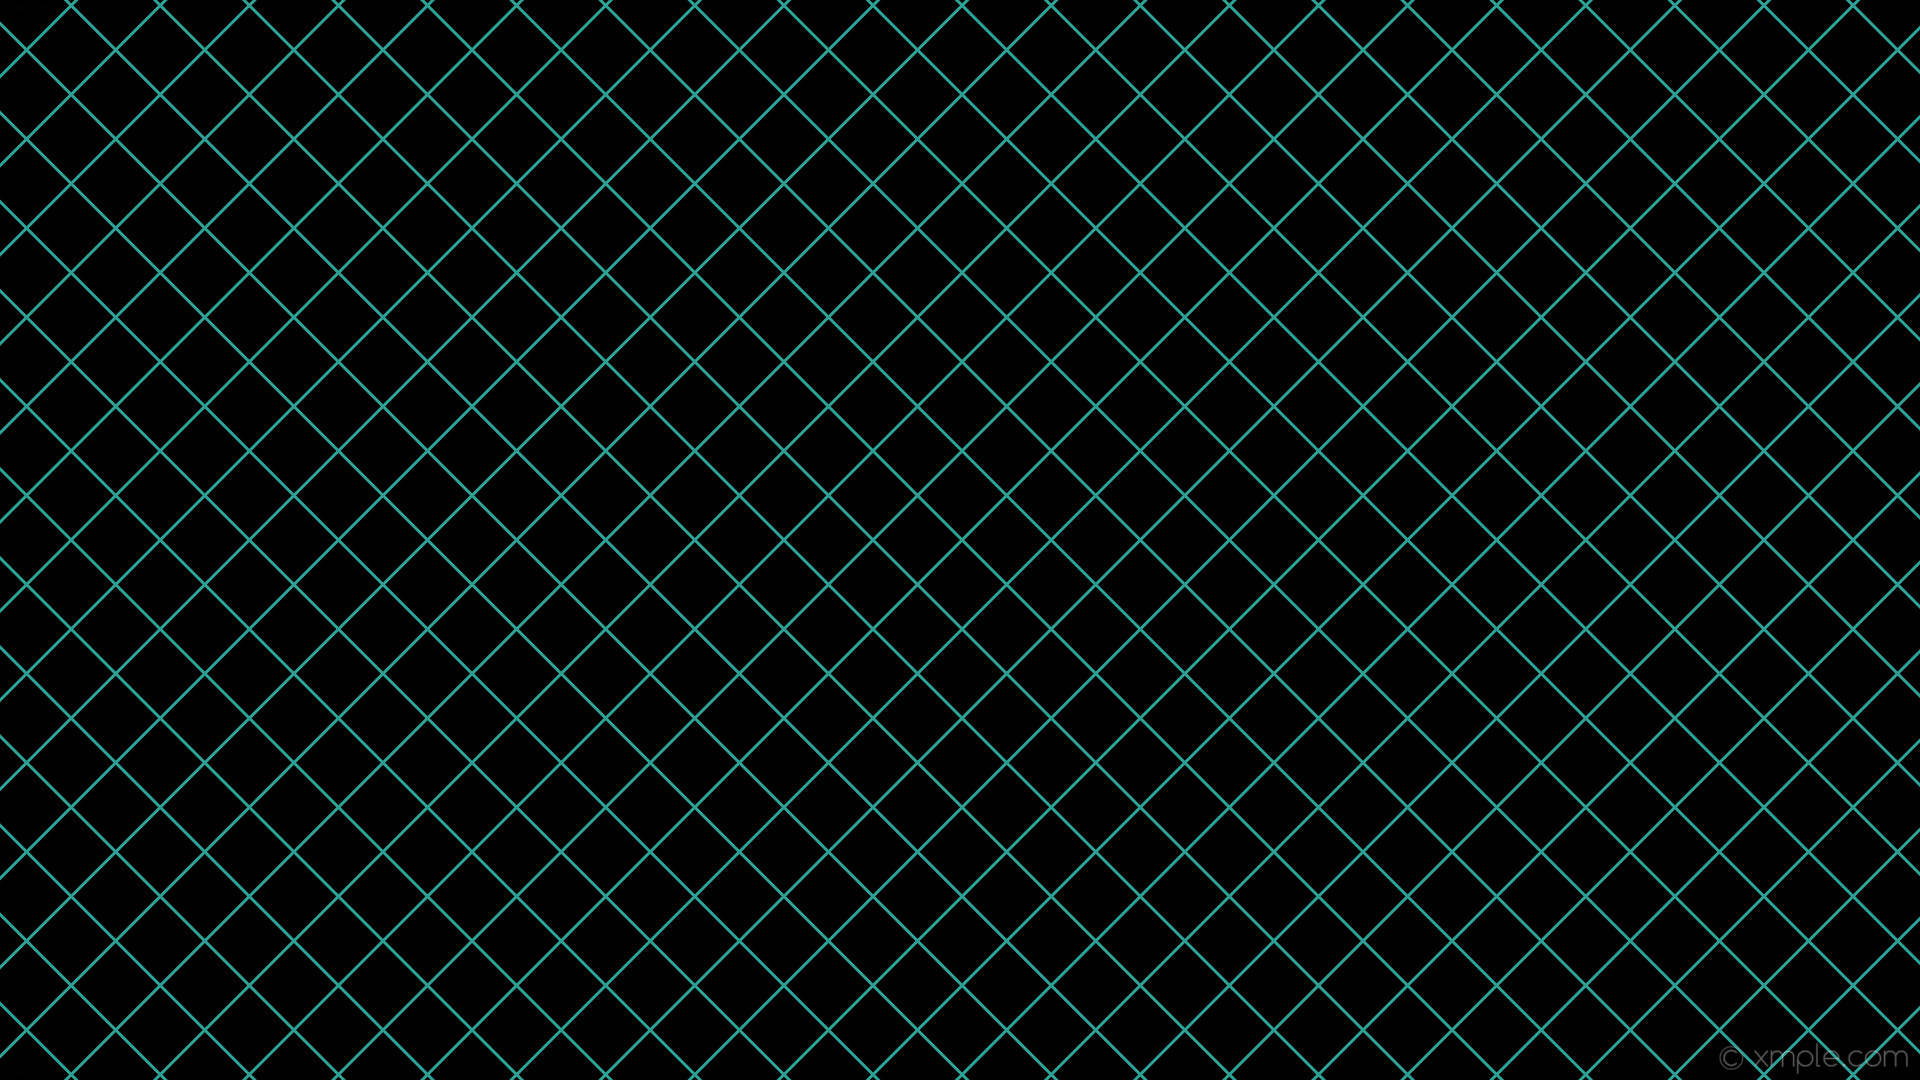 1920x1080 wallpaper black blue graph paper grid turquoise #000000 #40e0d0 45Â° 3px 63px